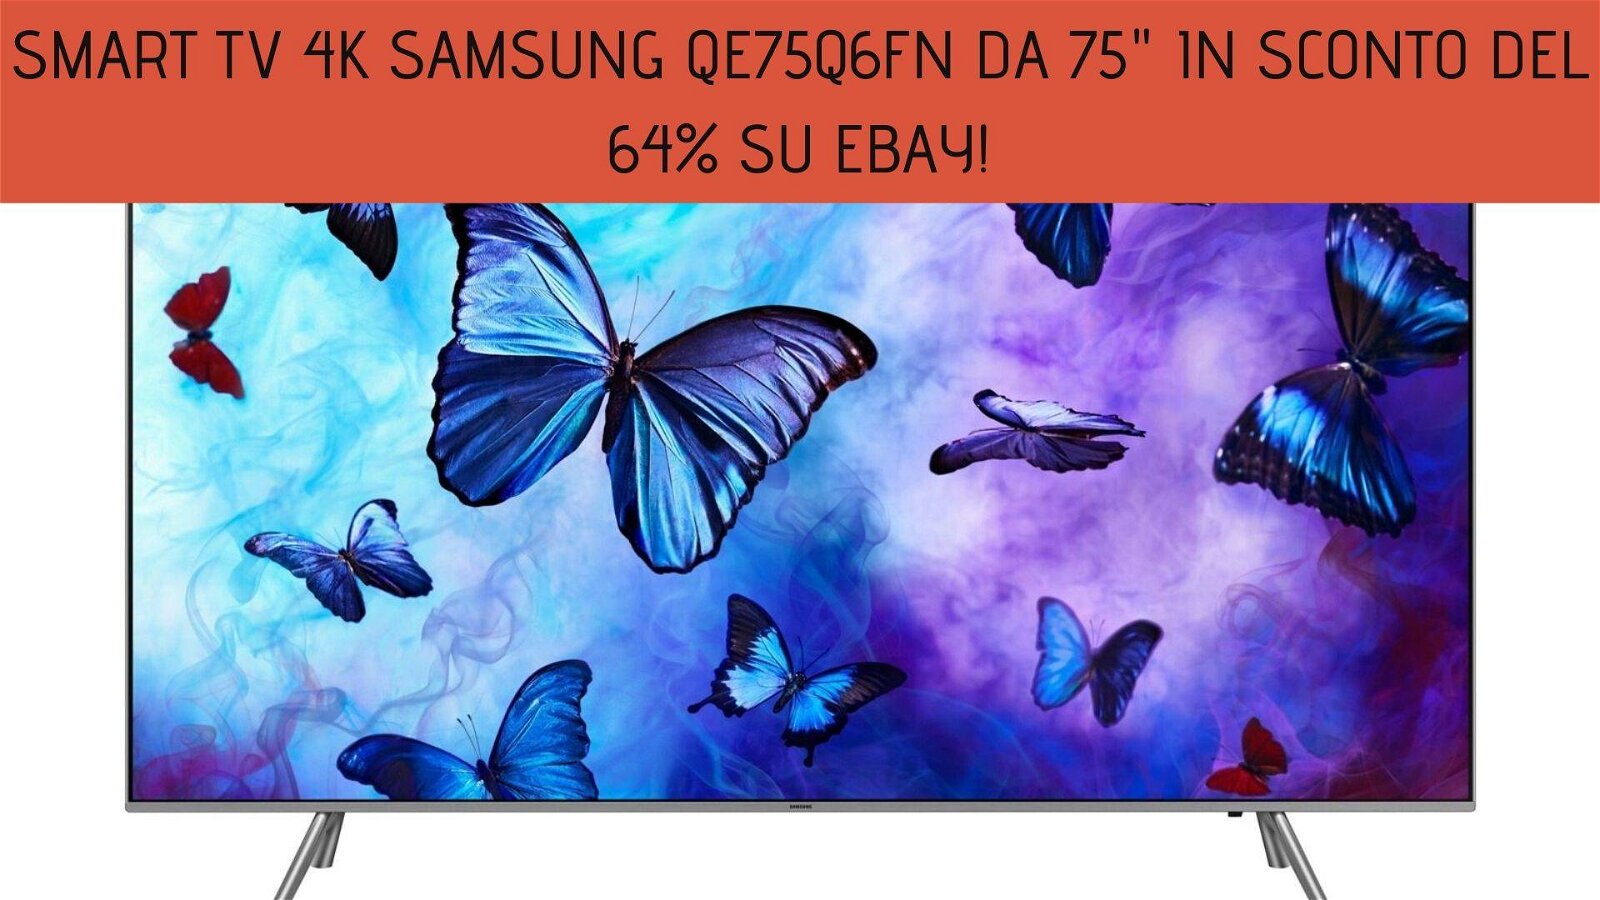 Immagine di Smart TV 4K Samsung QE75Q6FN da 75" in sconto del 64% su eBay!